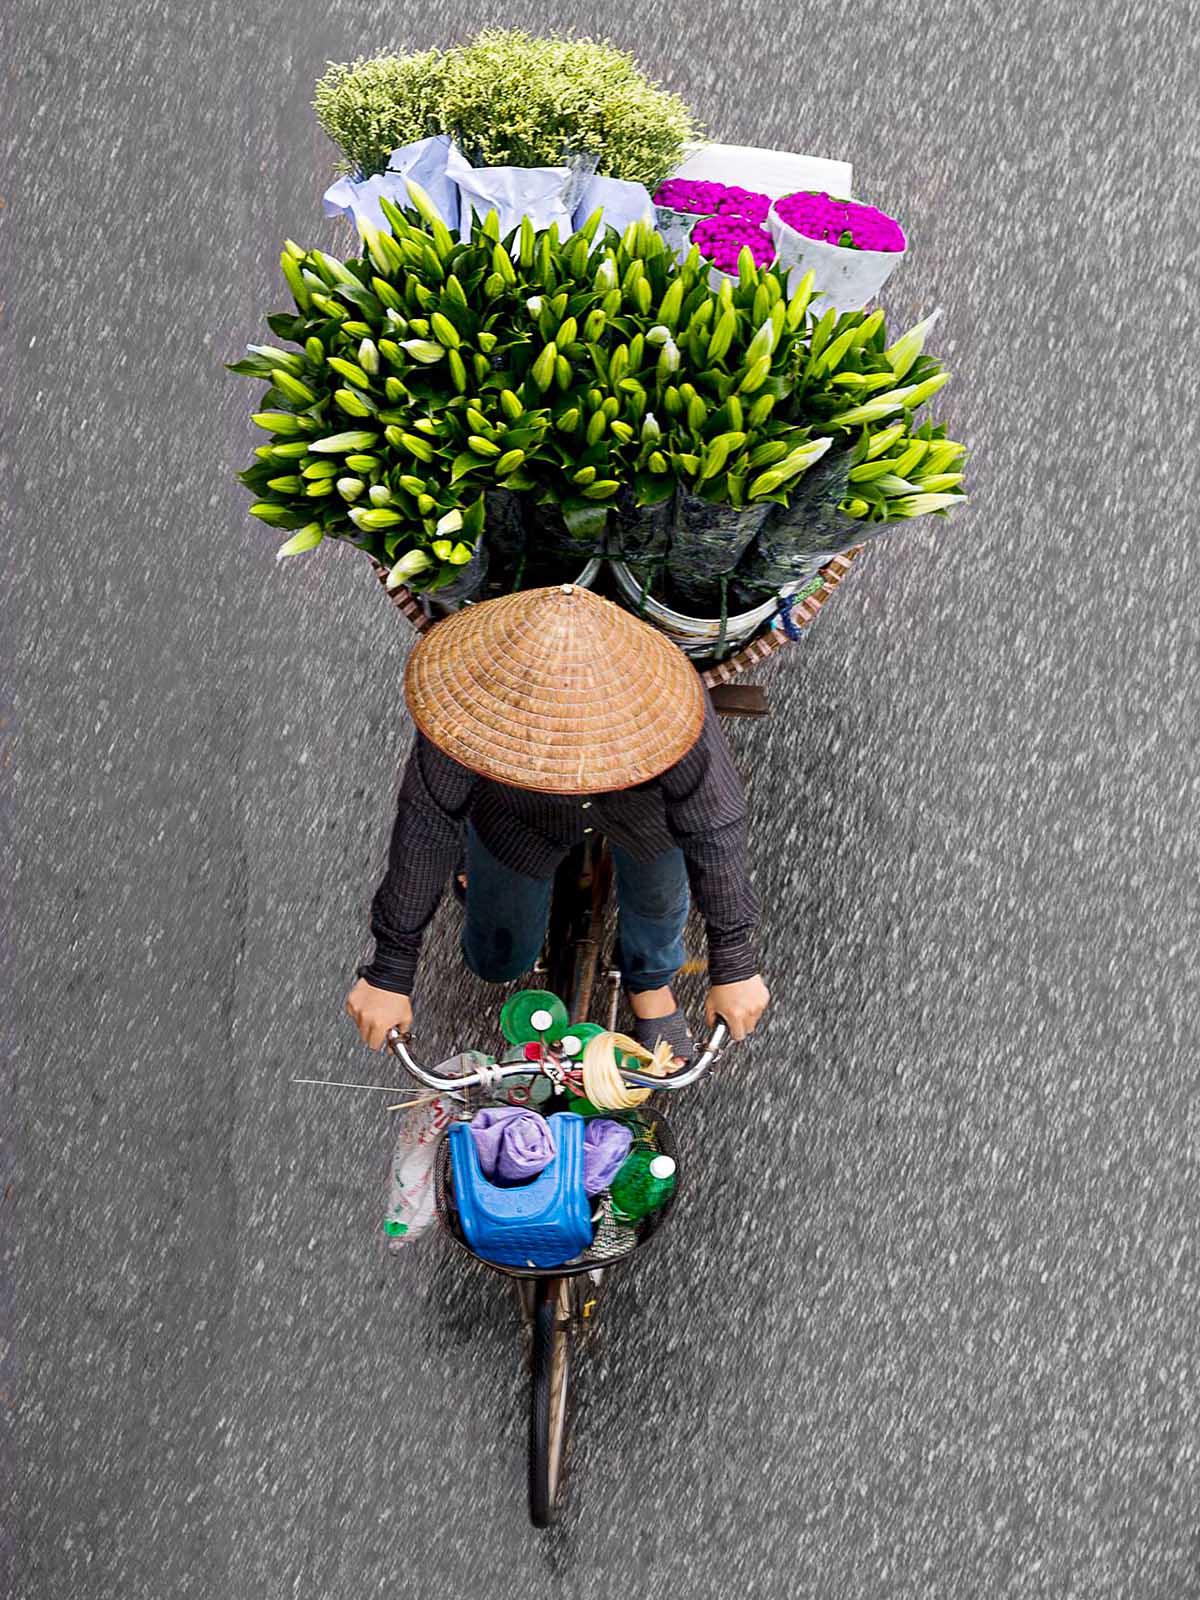 Flower Merchants in Motion 02